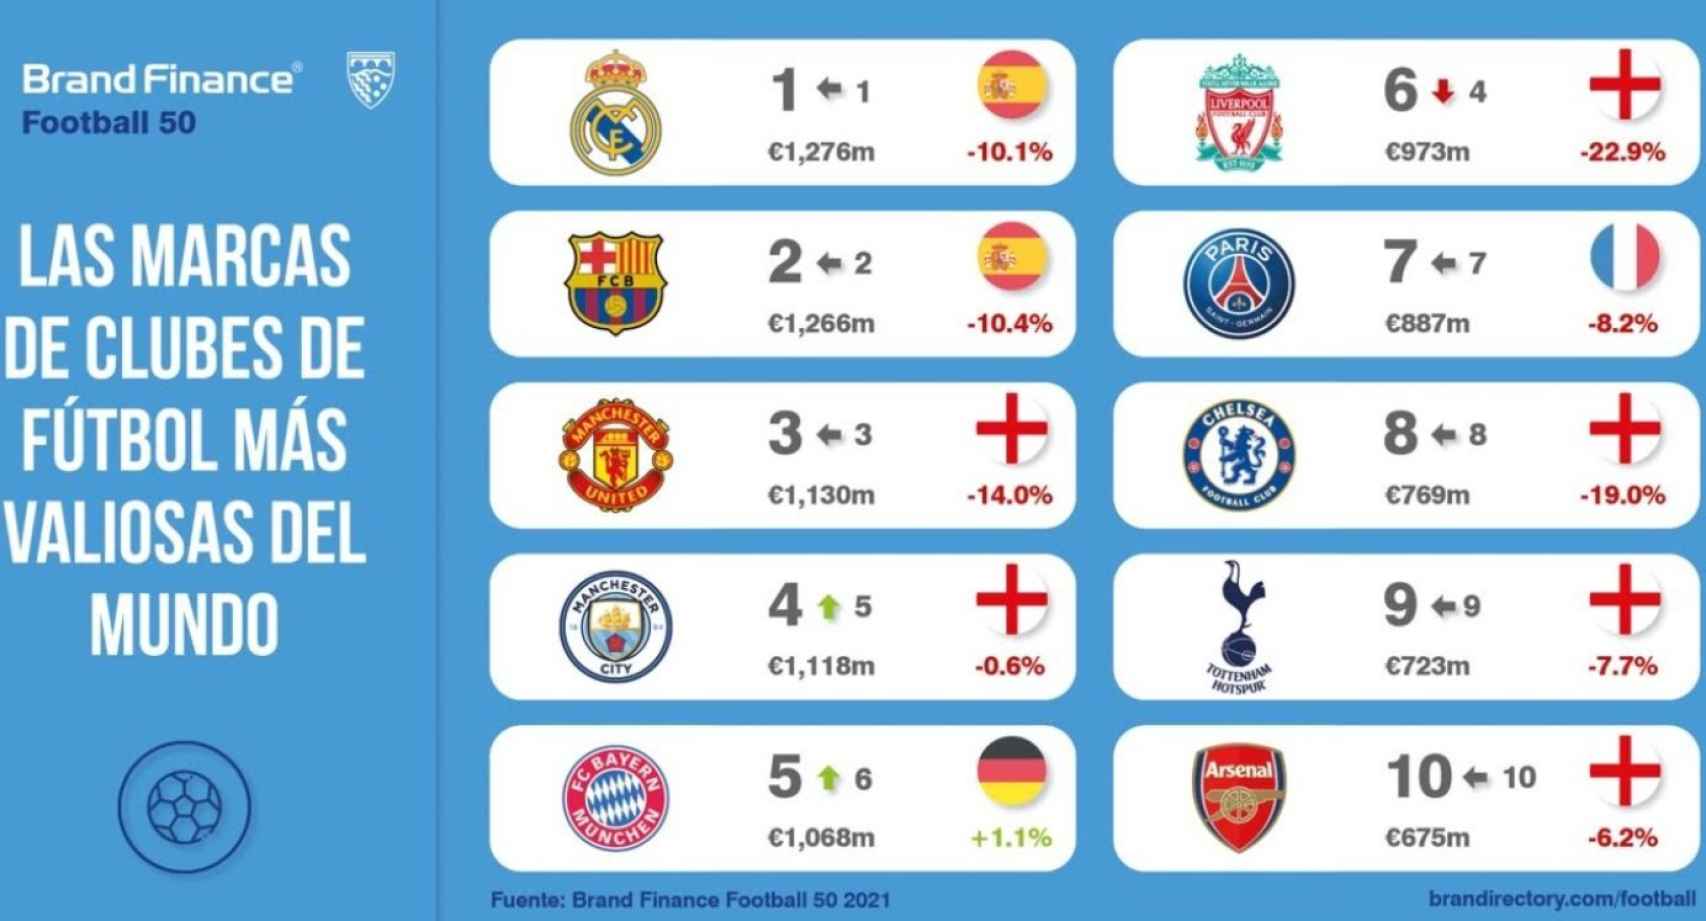 La tabla de los clubes del mundo con mayor valor de marca